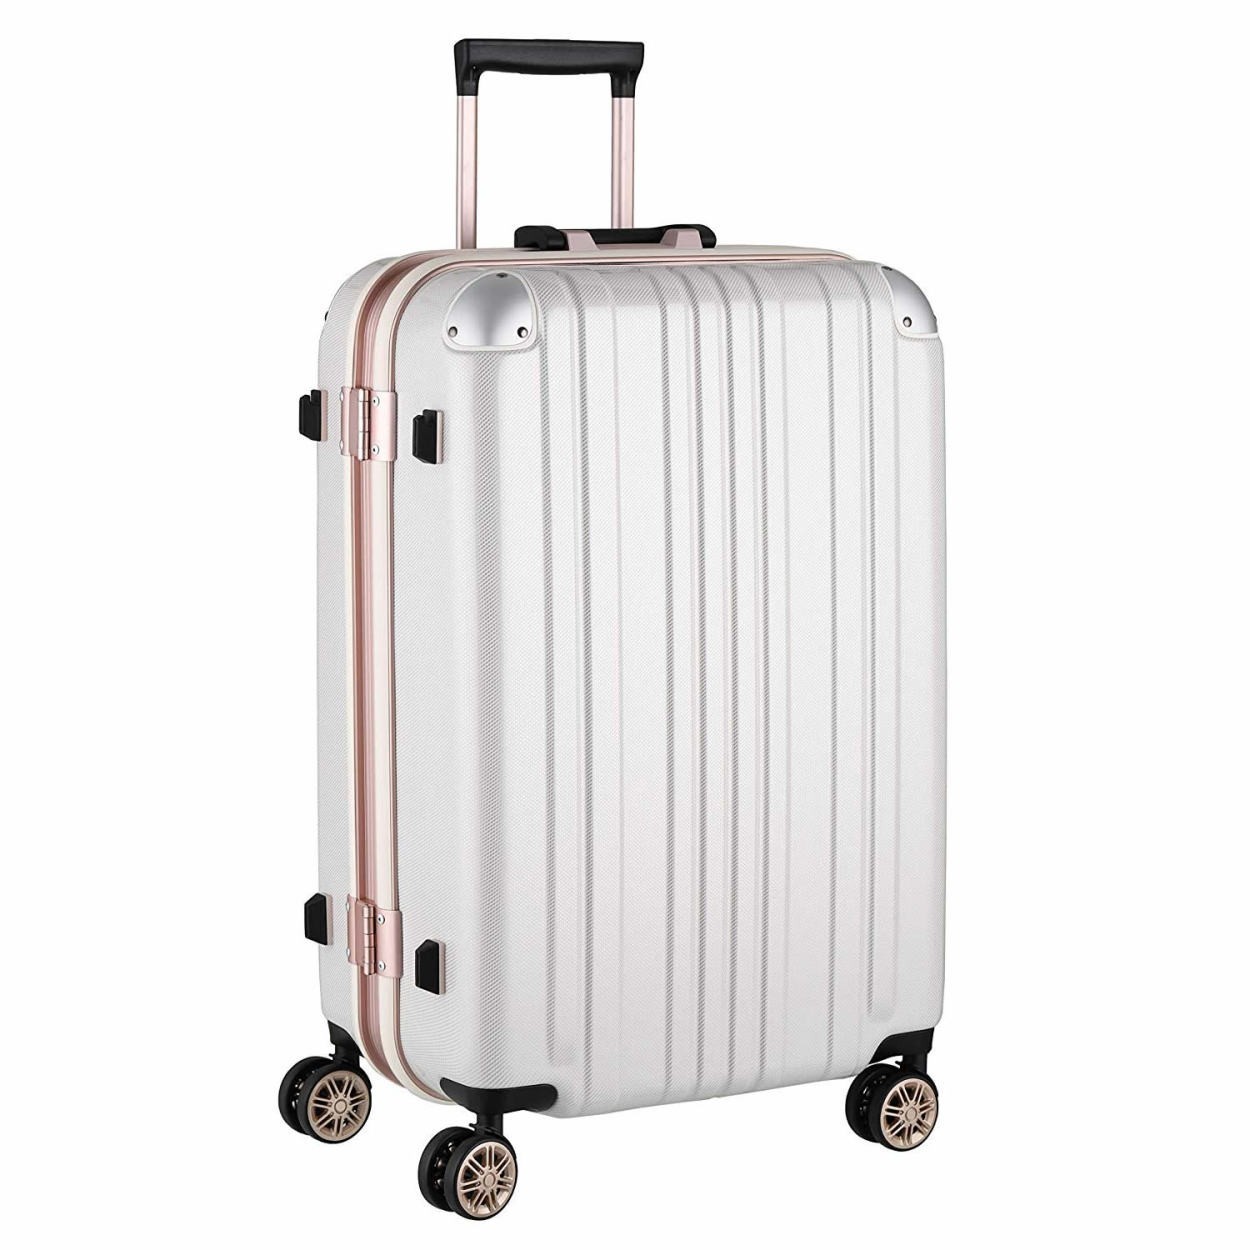 スーツケース キャリーバッグ トランクケース レディースバッグ Lサイズ 大型 超軽量 おしゃれ かわいい キャリーケース キャリーバッグ  5122-67